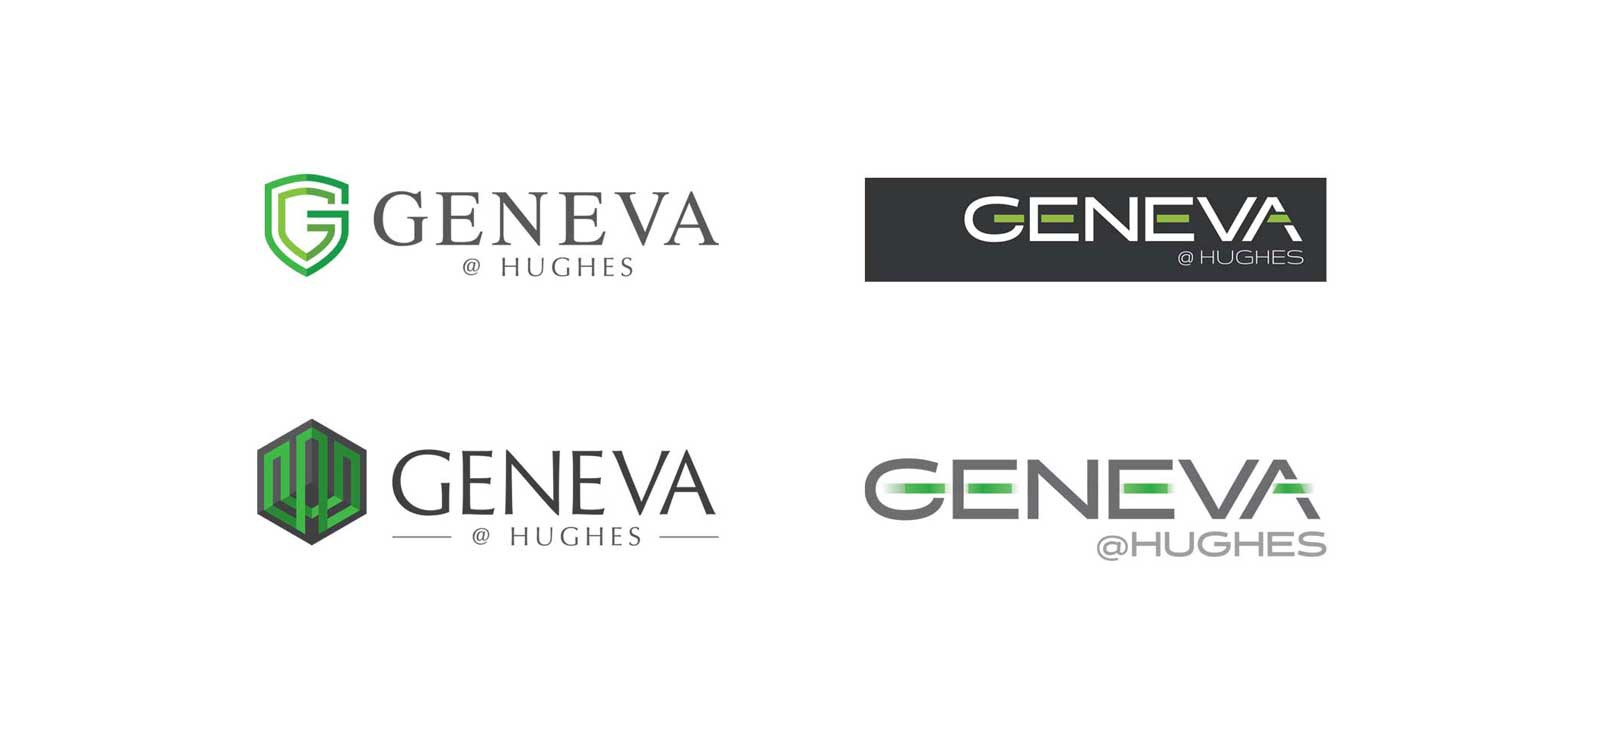 Geneva-Logos